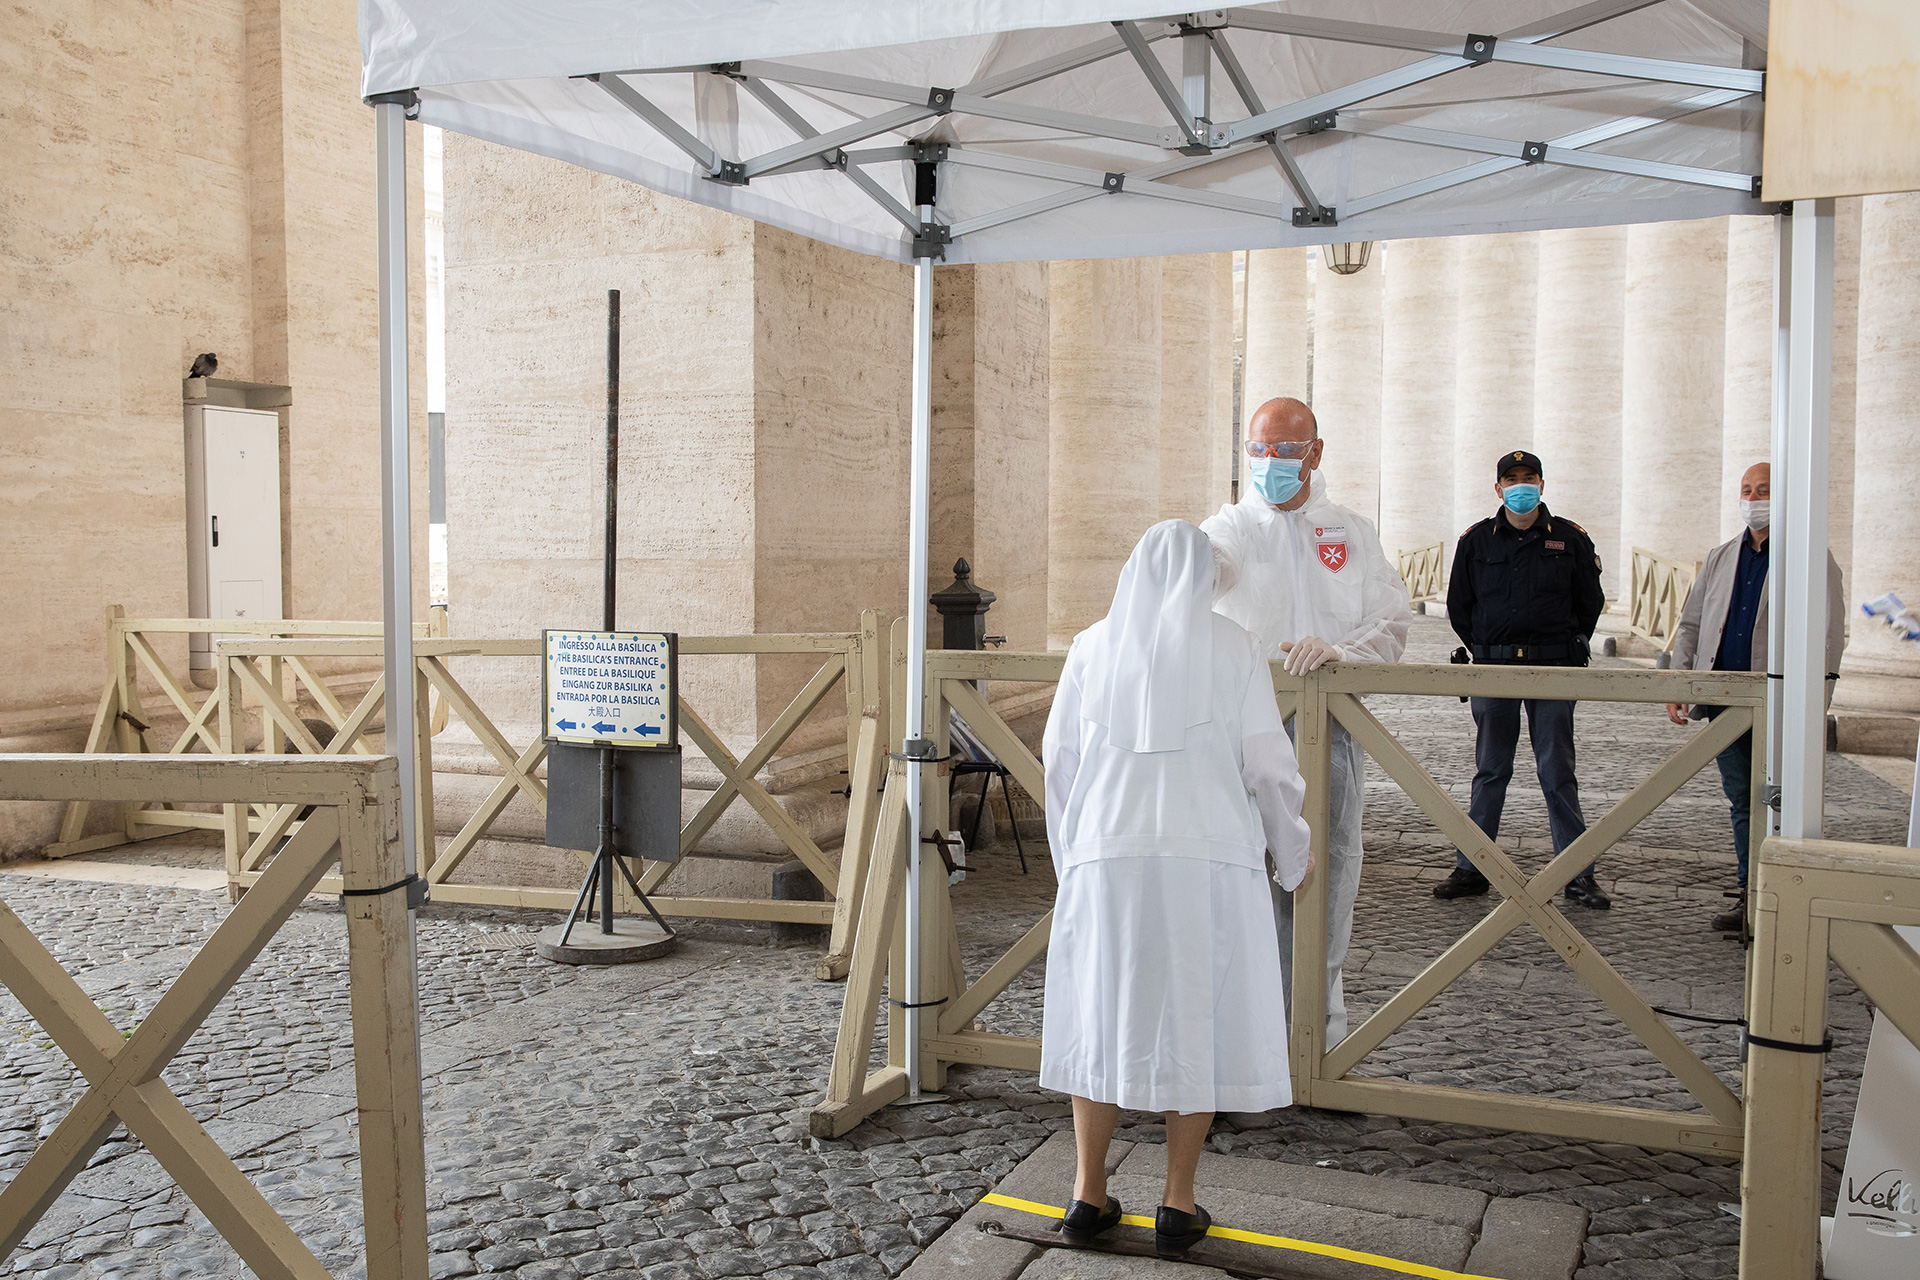 Riapre la Basilica di San Pietro: i volontari dell’Ordine di Malta impegnati nei controlli sanitari